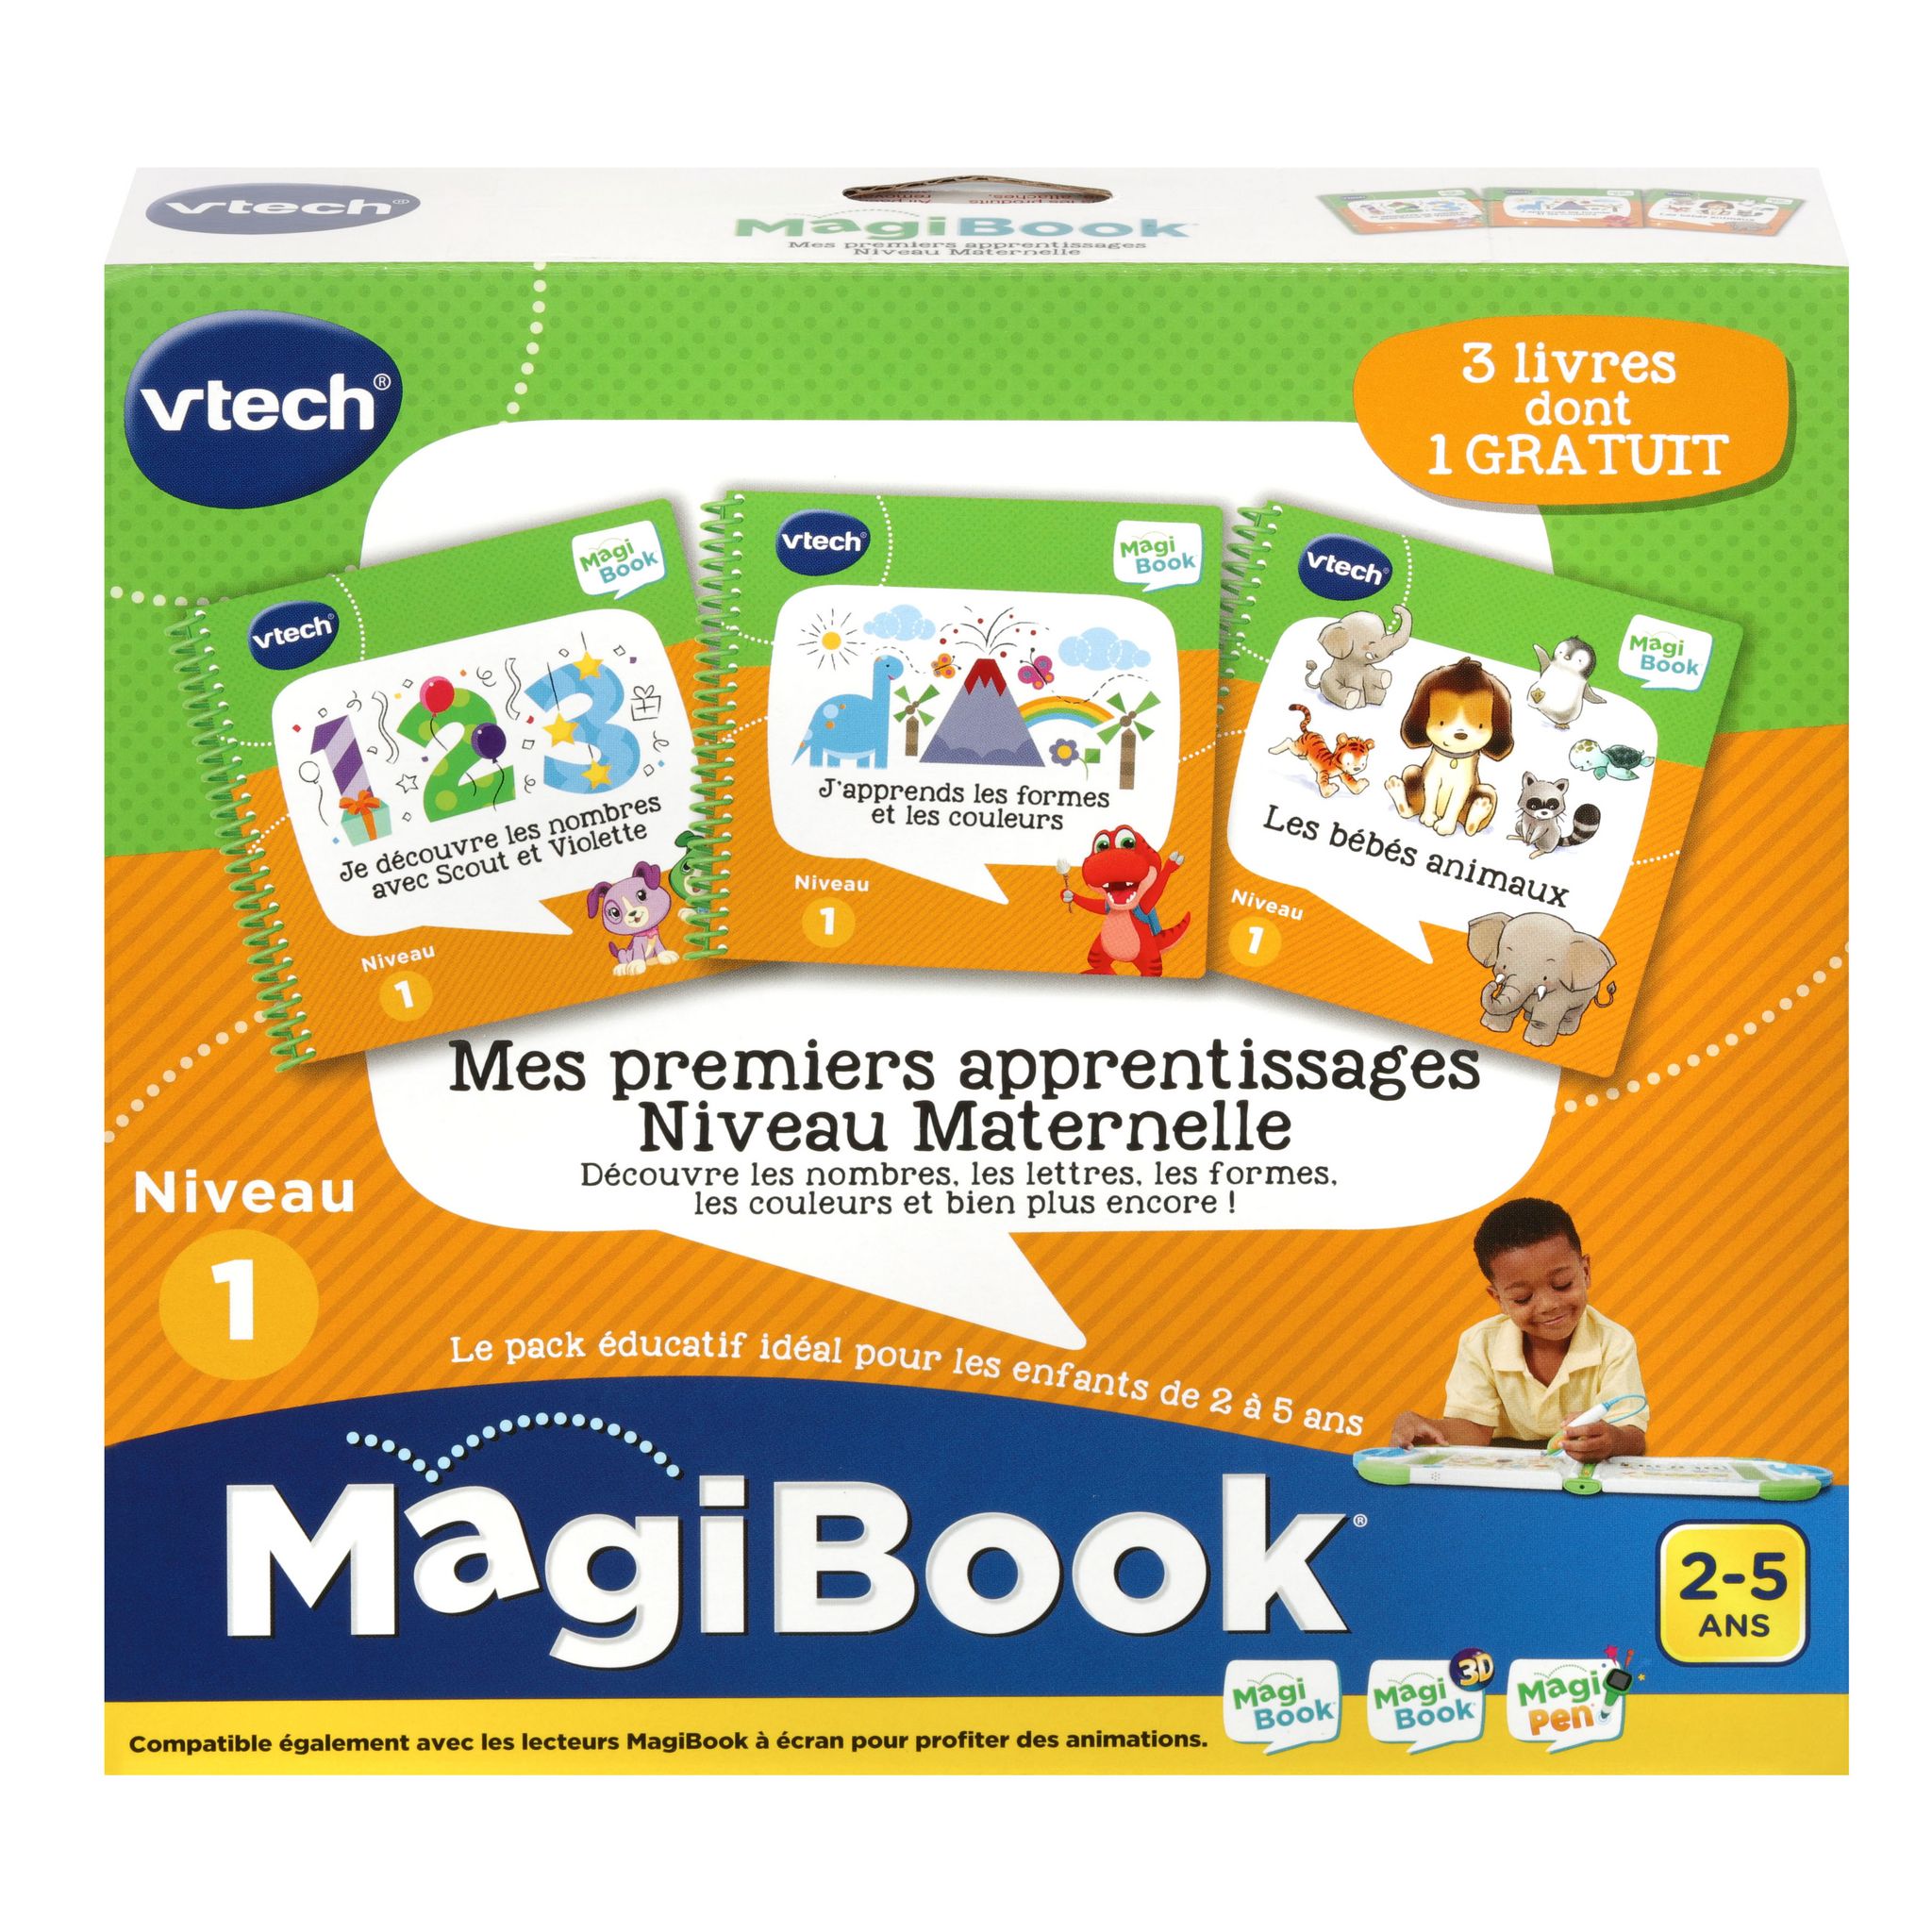 MagiBook - Mes premiers apprentissages niveau maternelle (bébés animaux, je  découvre les nombres avec Scout et Violette, j'apprends les formes et les